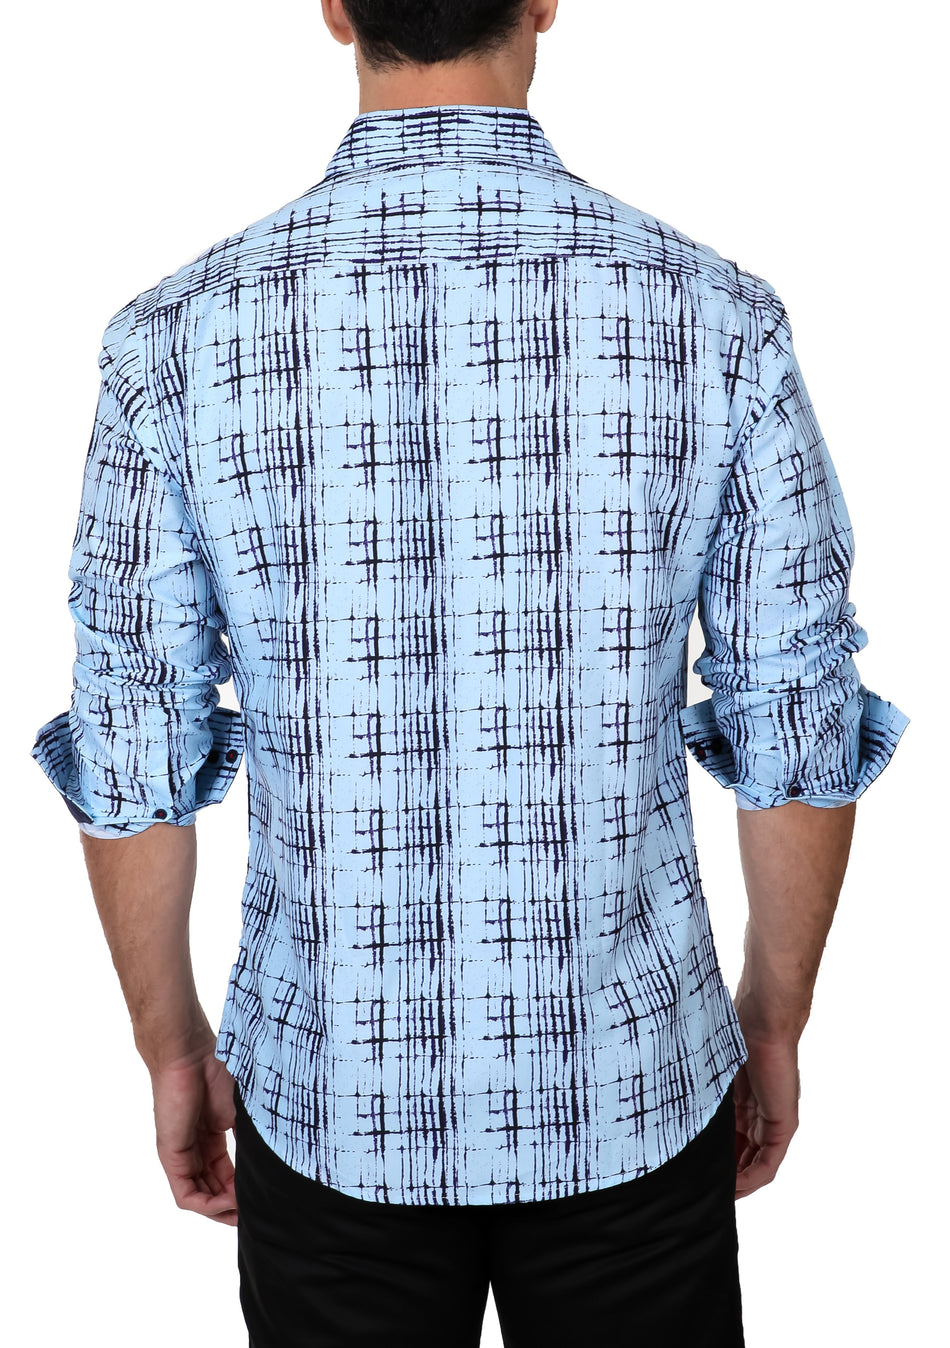 192260 - Men's Blue Button Up Long Sleeve Dress Shirt